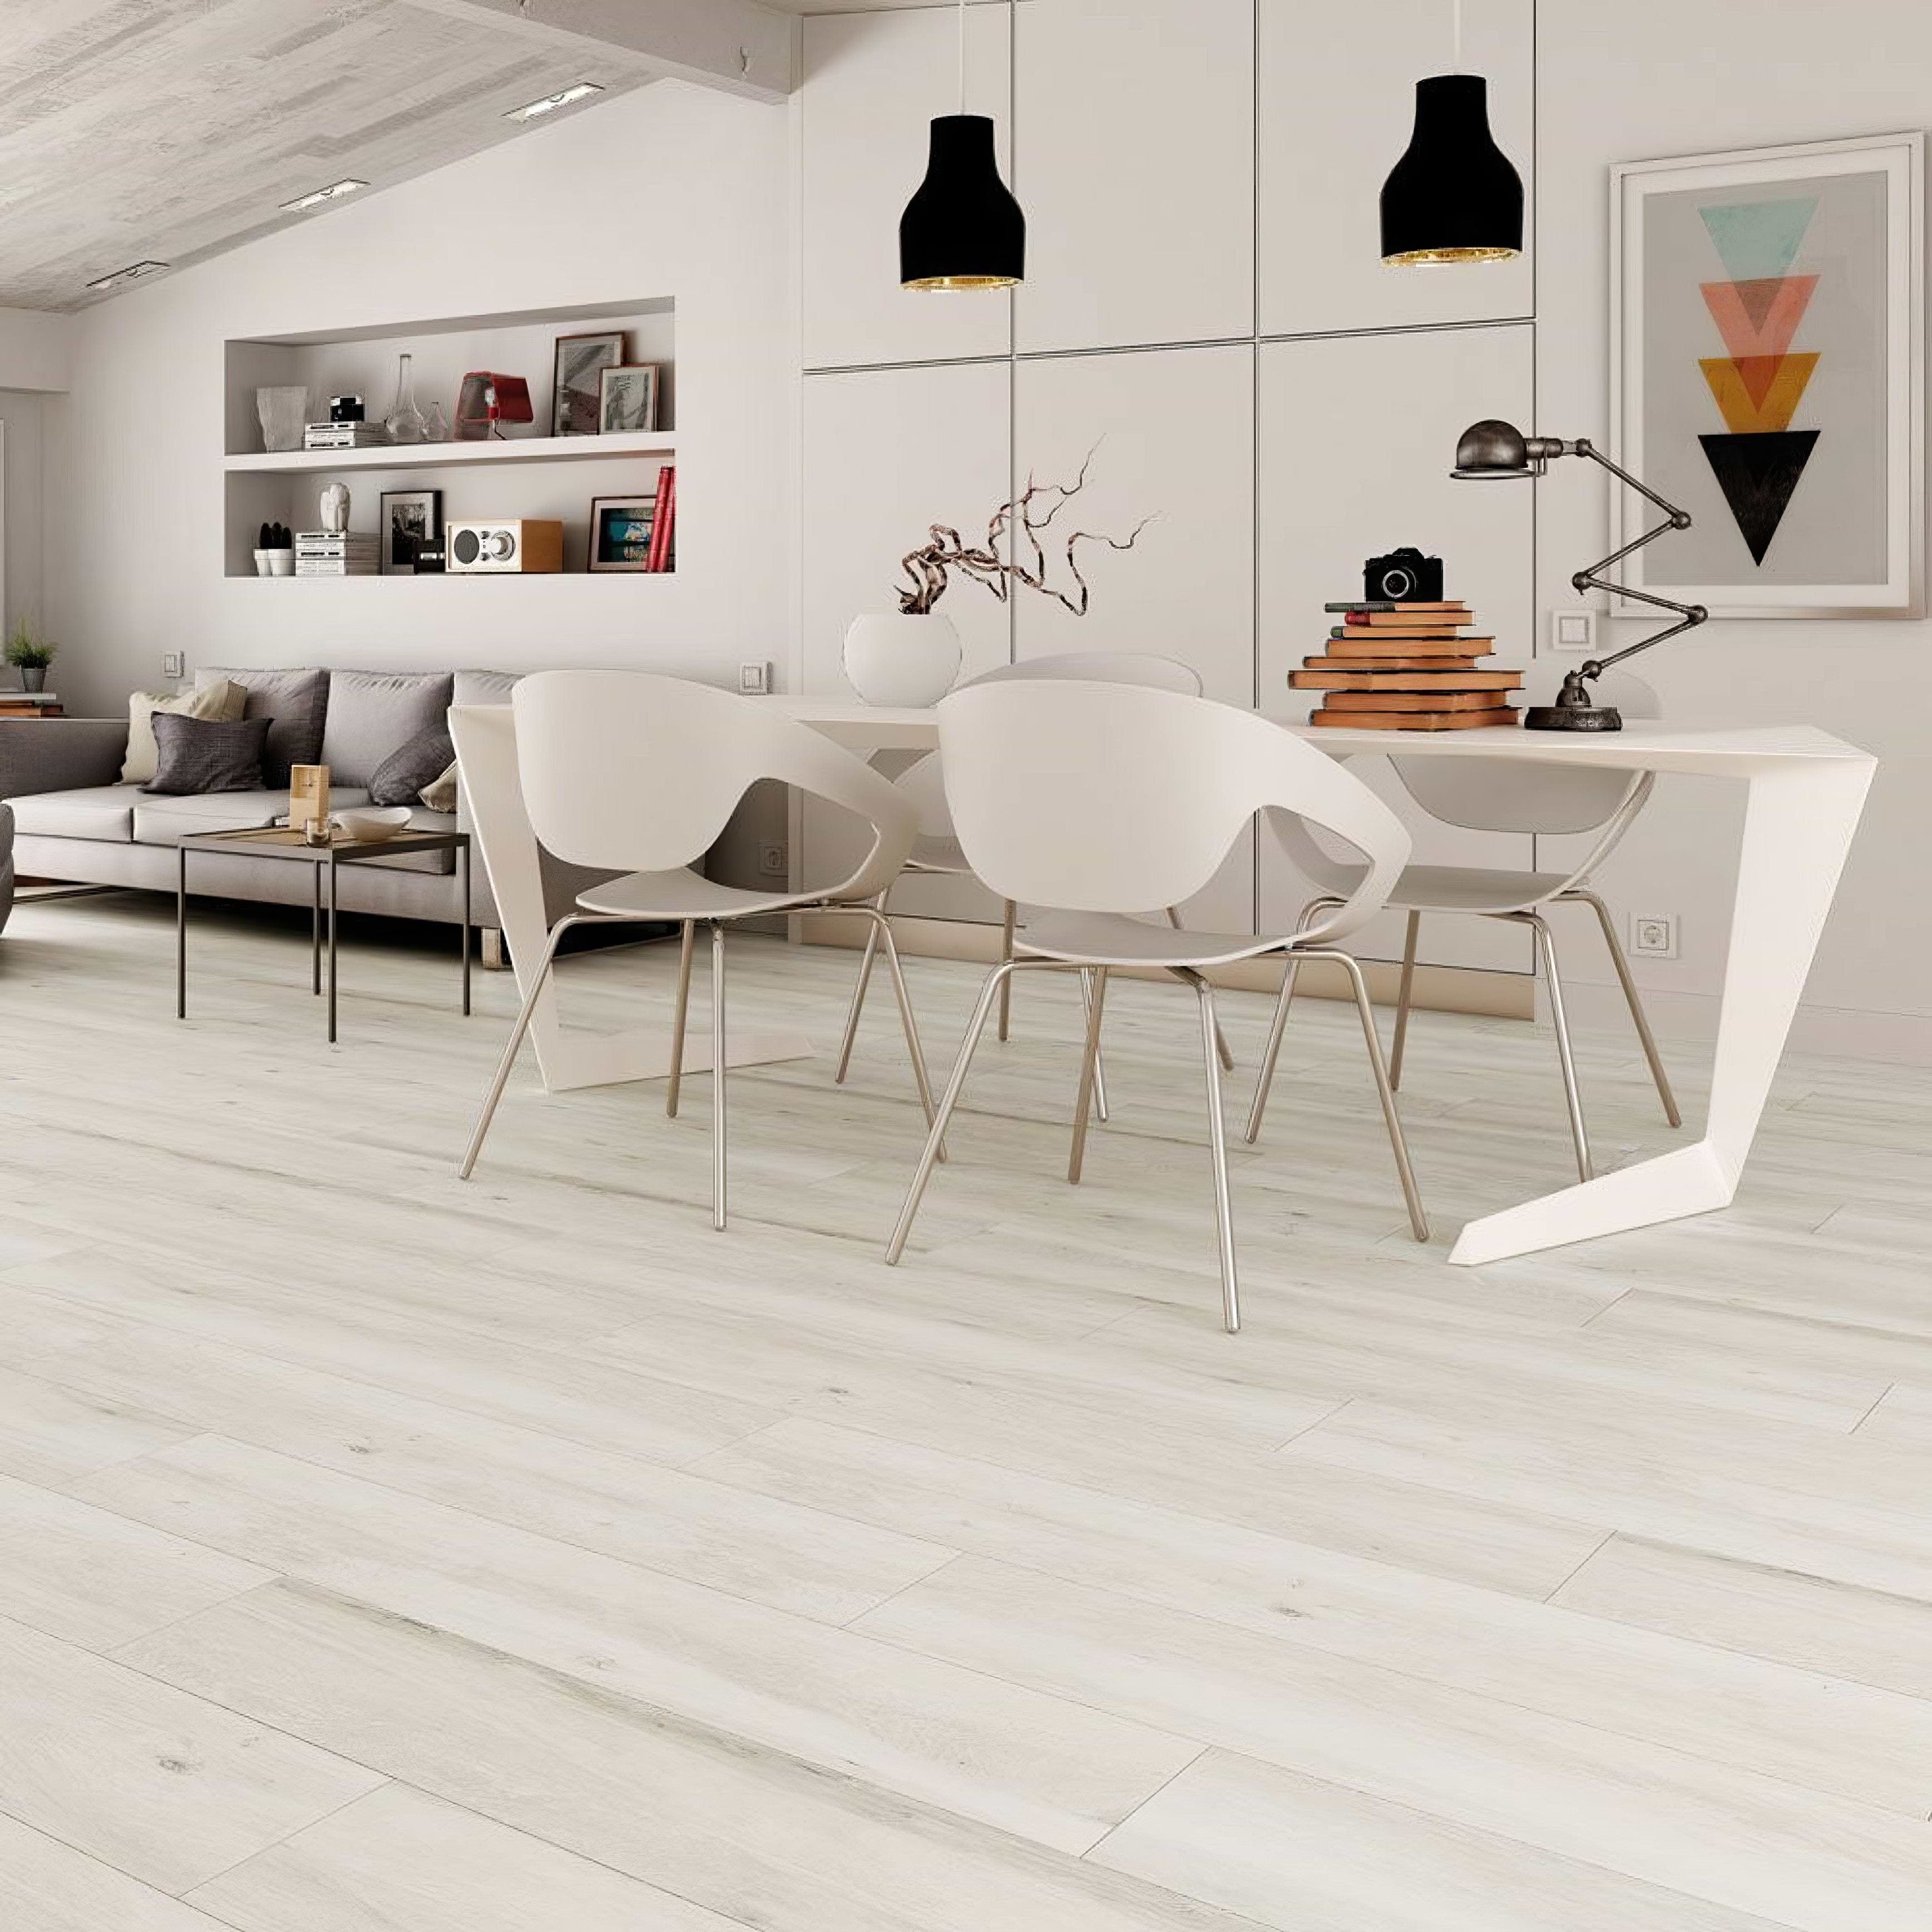 Atelier Blanco Plank Tiles - Hyperion Tiles